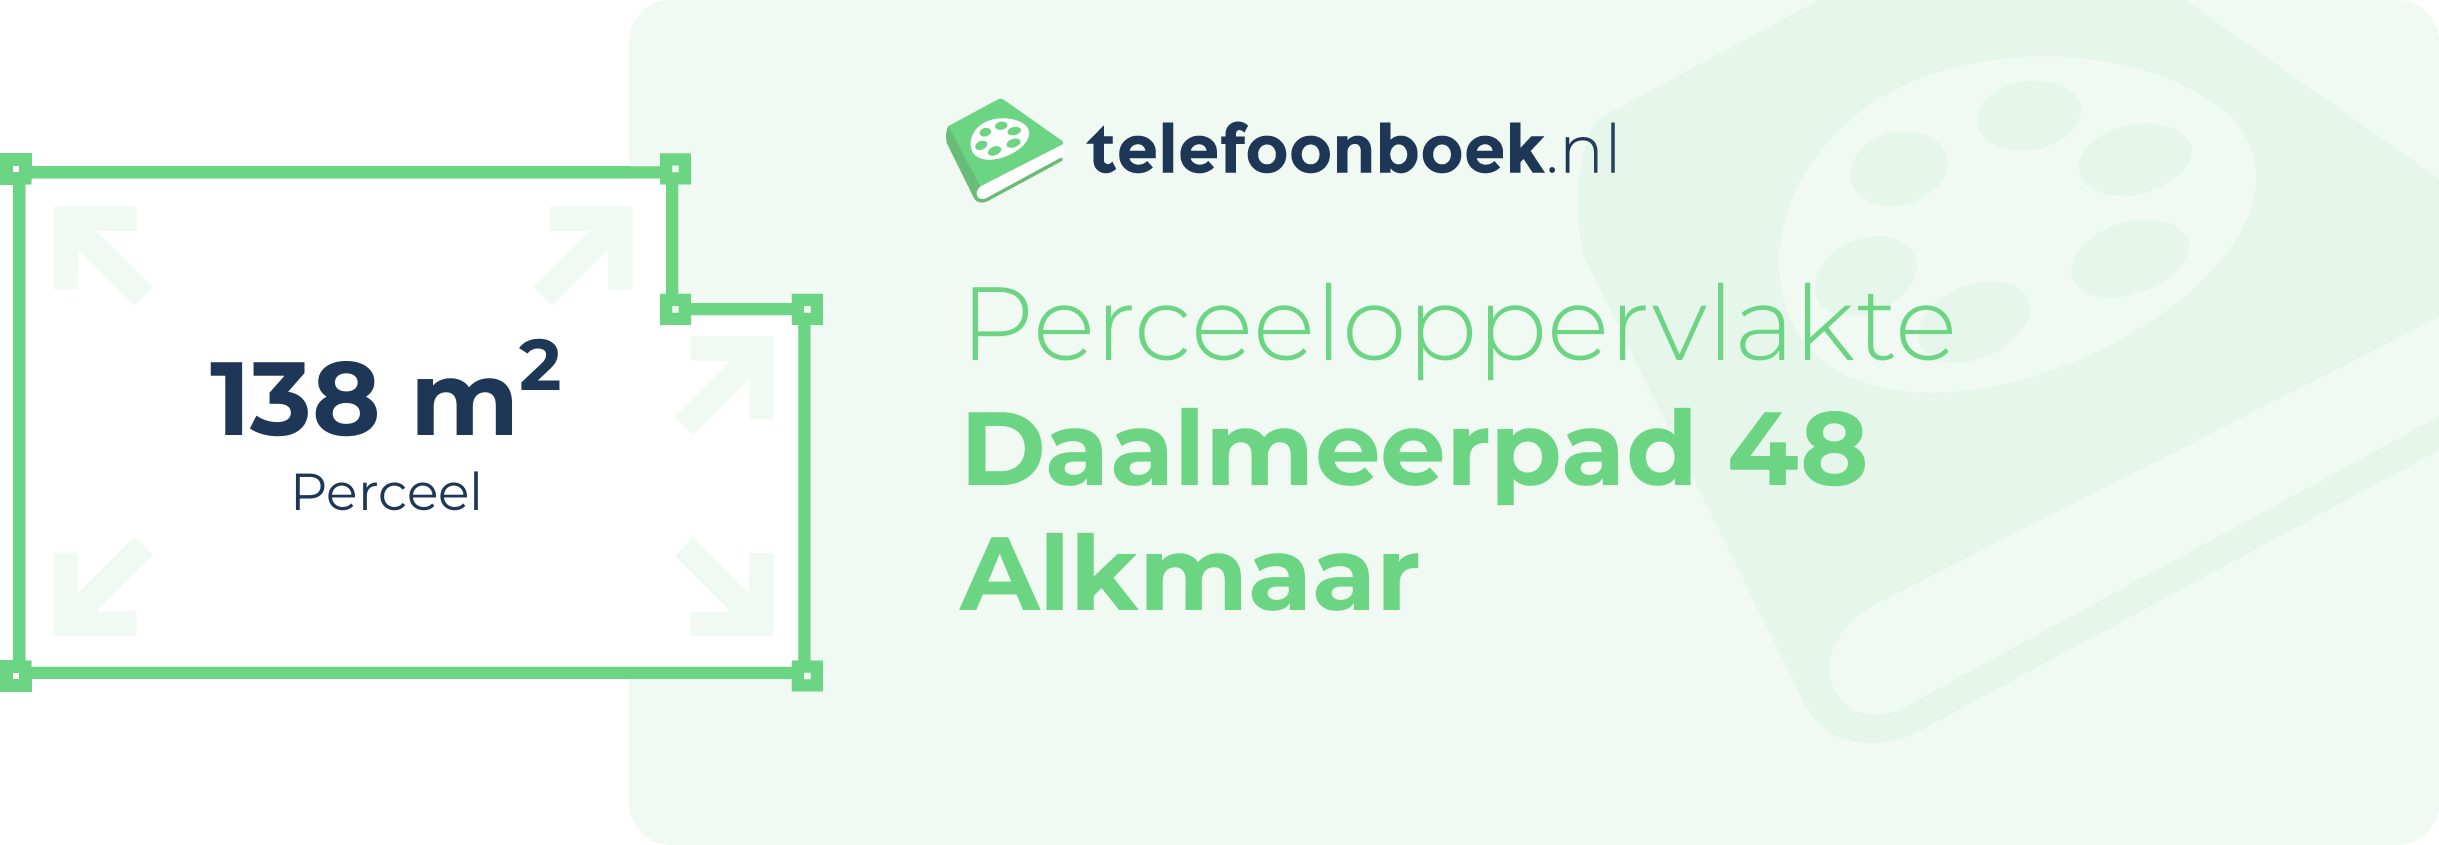 Perceeloppervlakte Daalmeerpad 48 Alkmaar